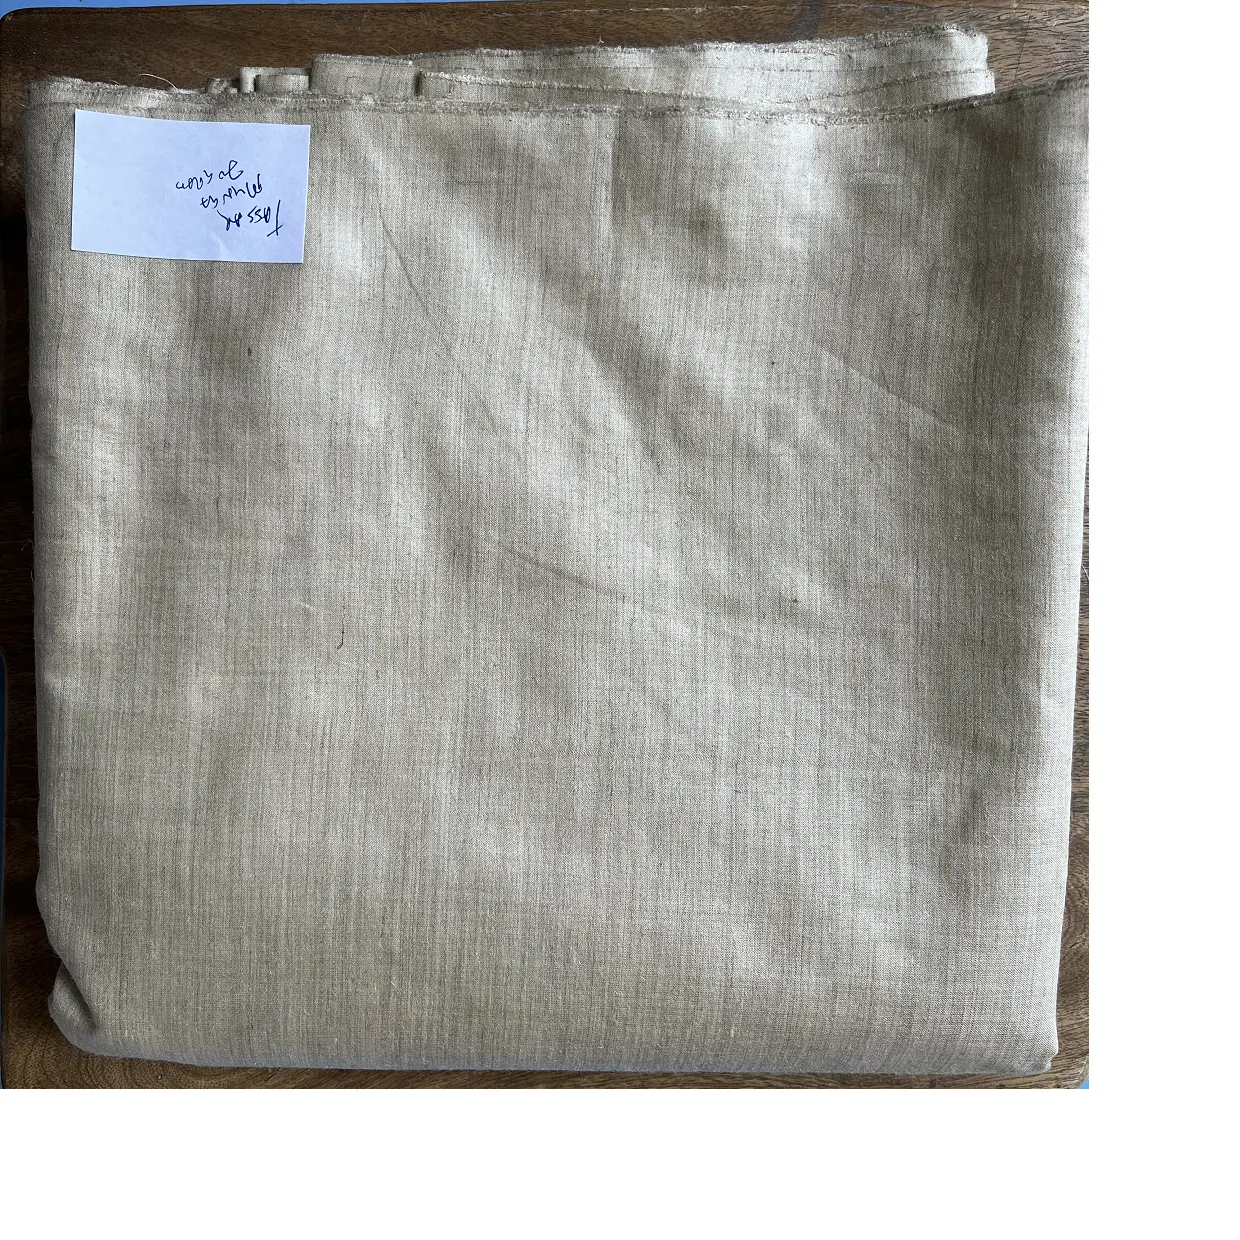 Изготовленный на заказ 100% tussar munga silk 70 грамм ткани ручной ткацкий станок, прочная и устойчивая качественная ткань, используемая для домашних целей.